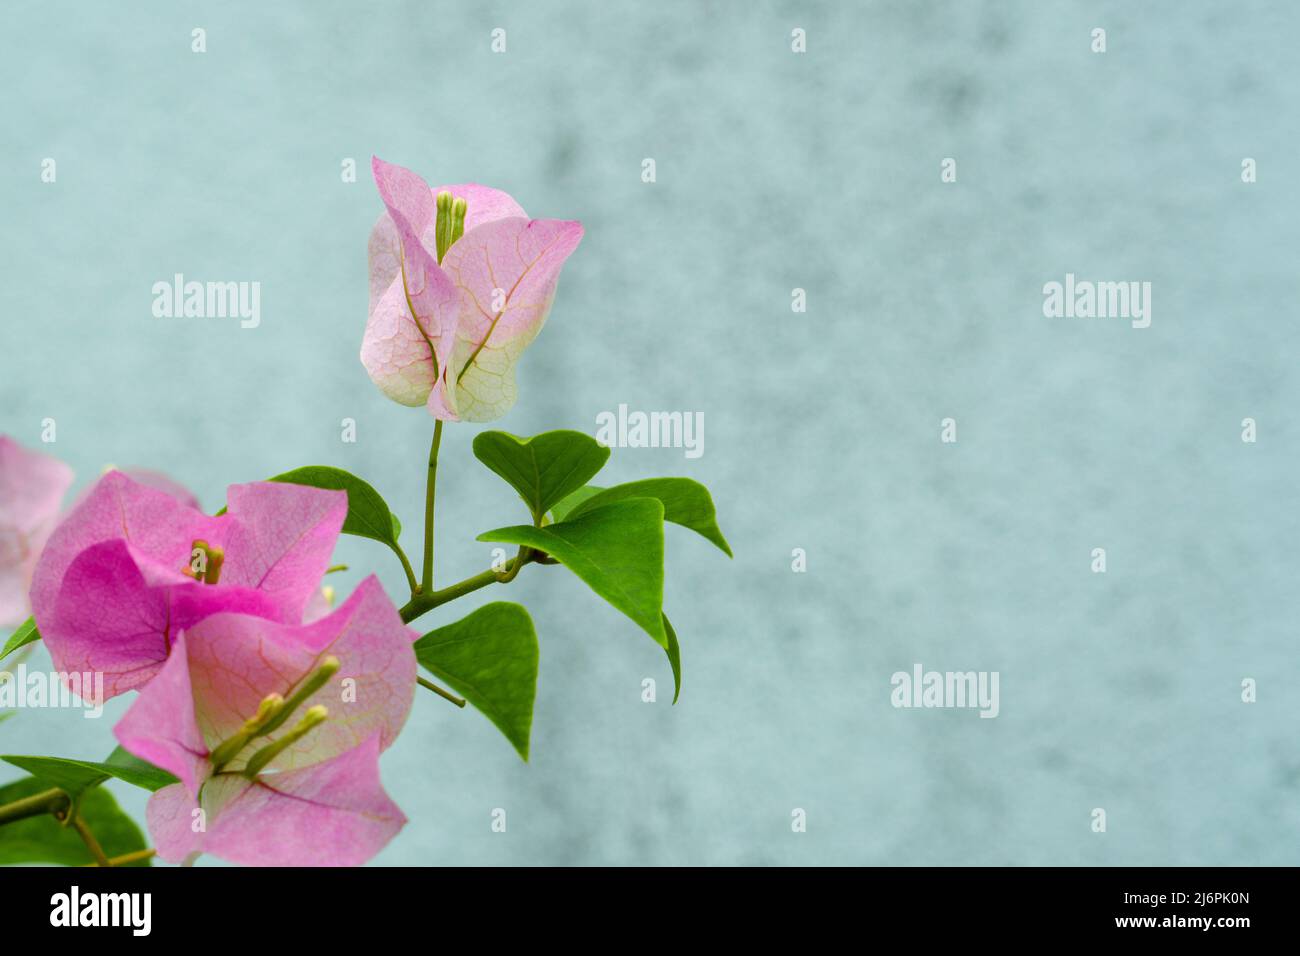 Hermosa flor rosa de árbol floreciendo en una rama de cerca. Tiene flores en el fondo. Concepto de primavera y naturaleza Foto de stock